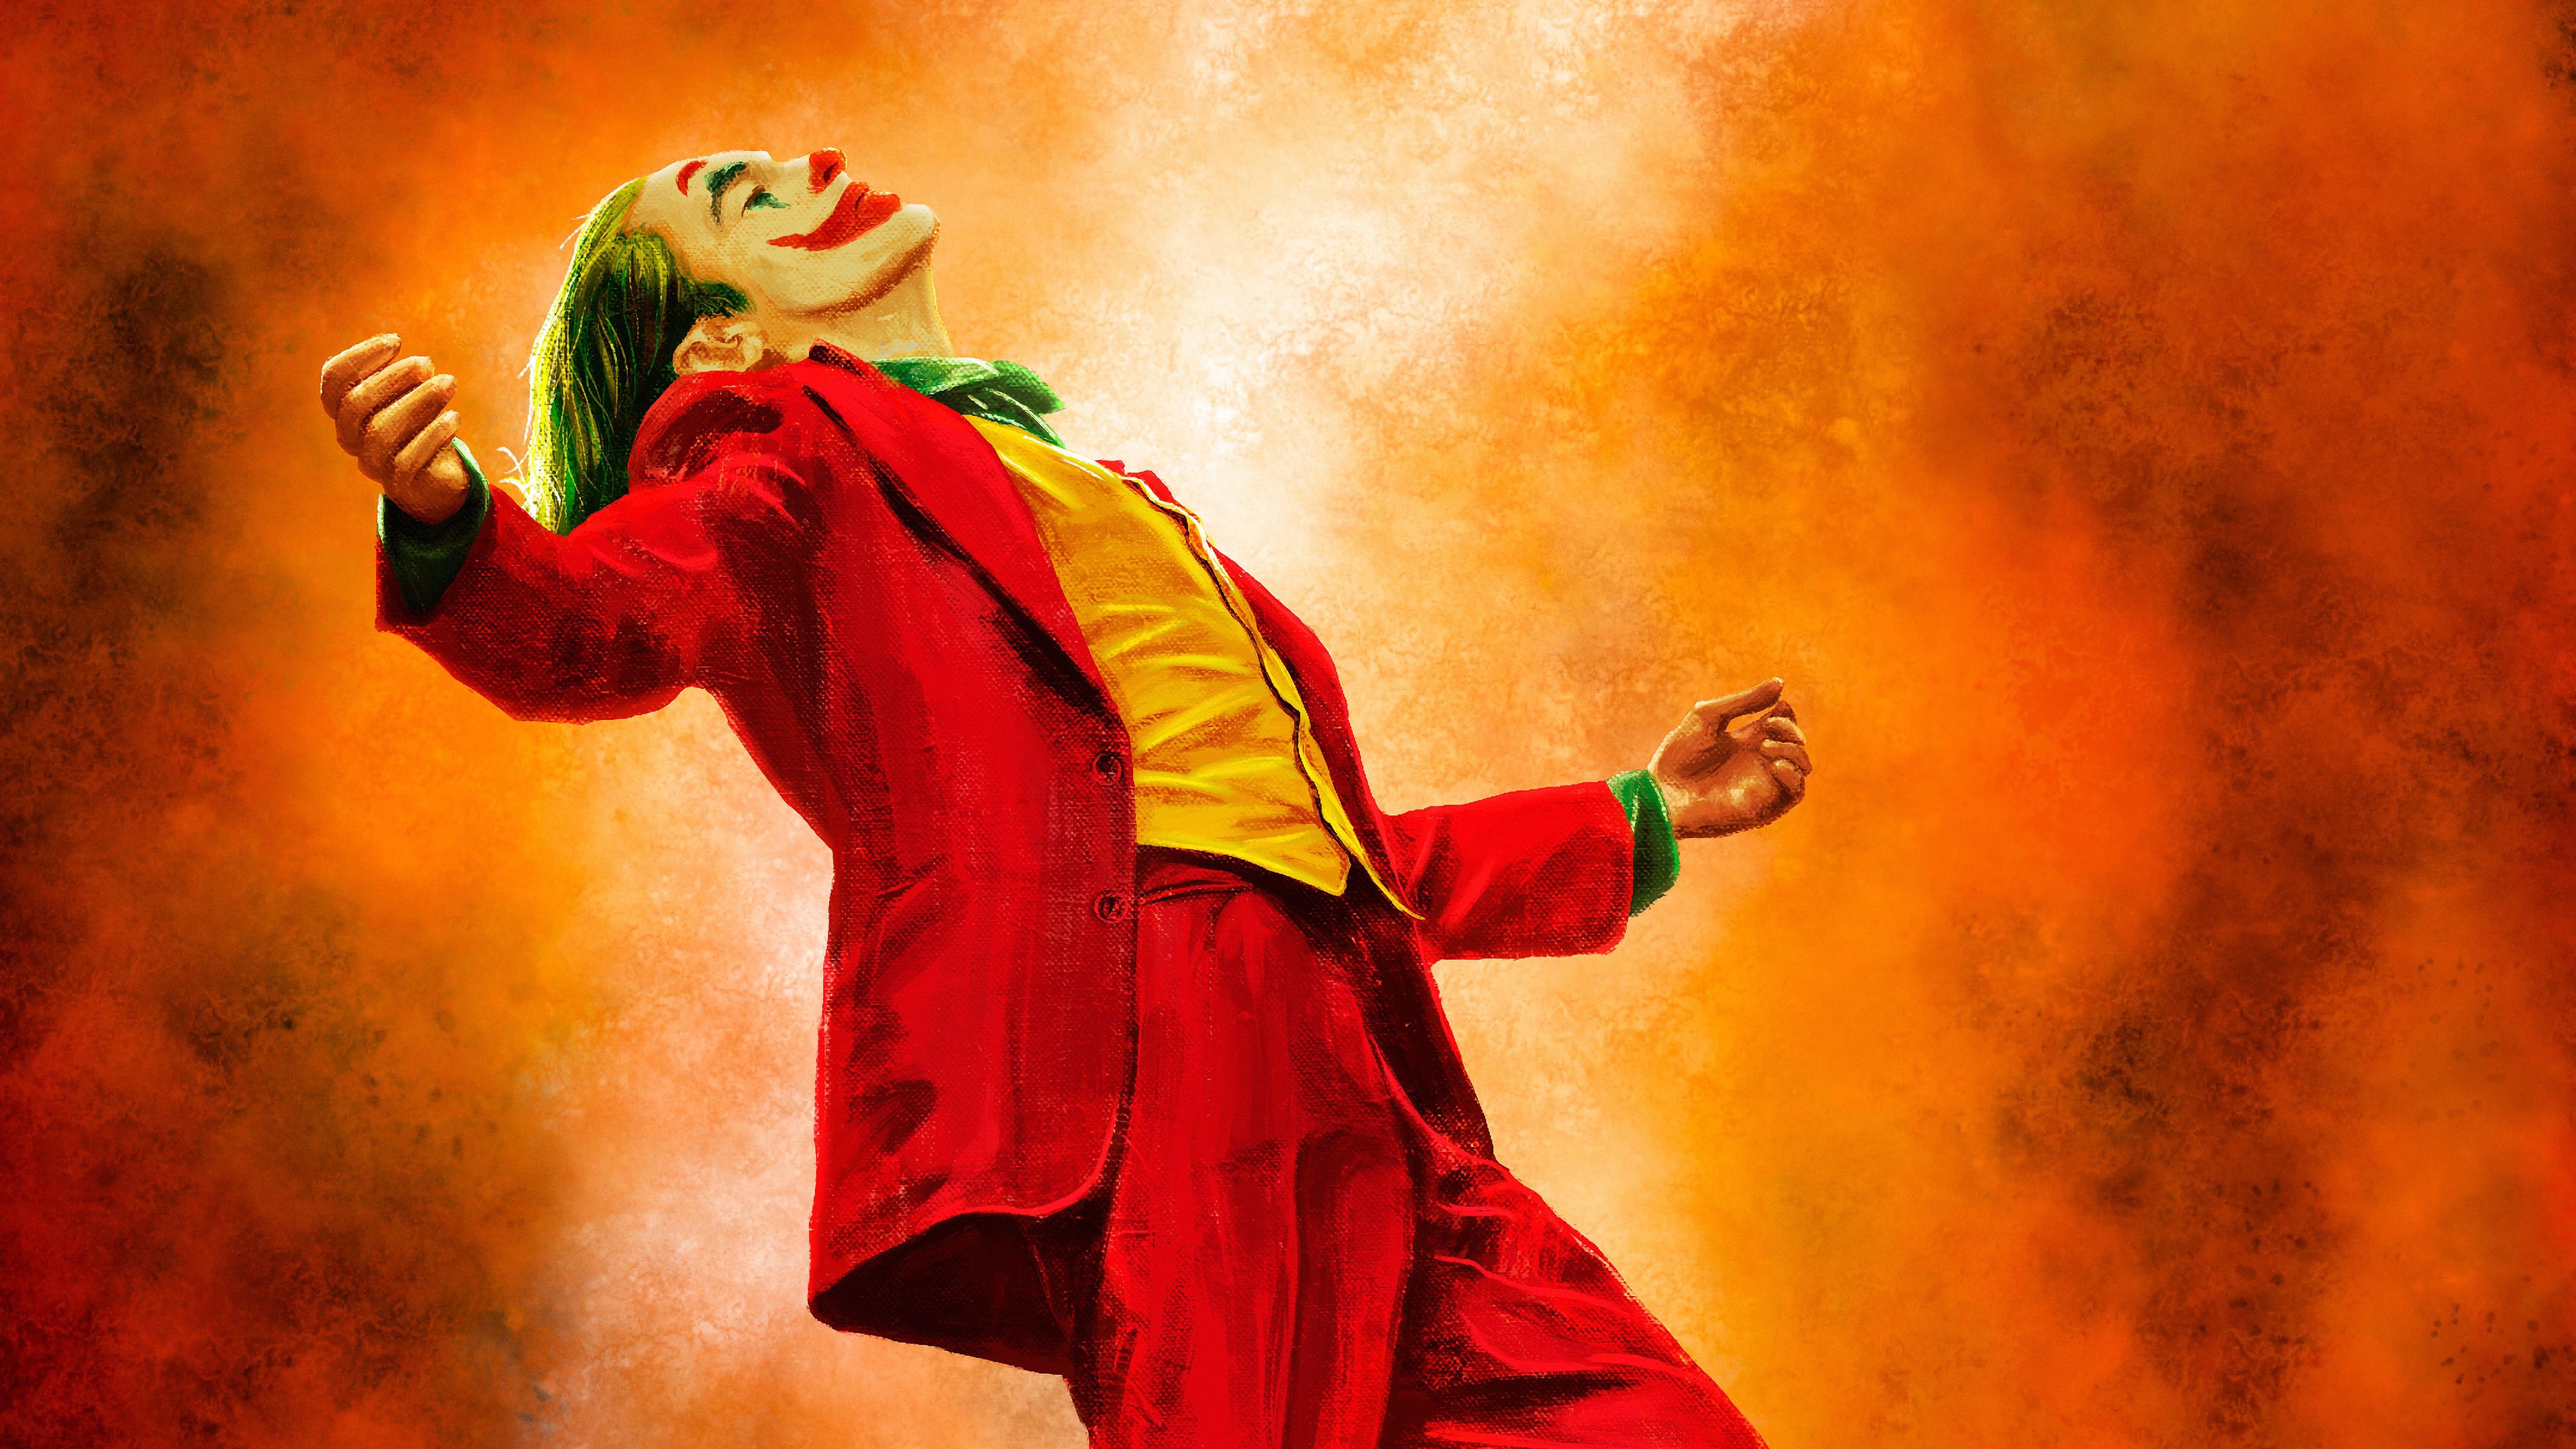 Joker Happy Dance Art Wallpapers